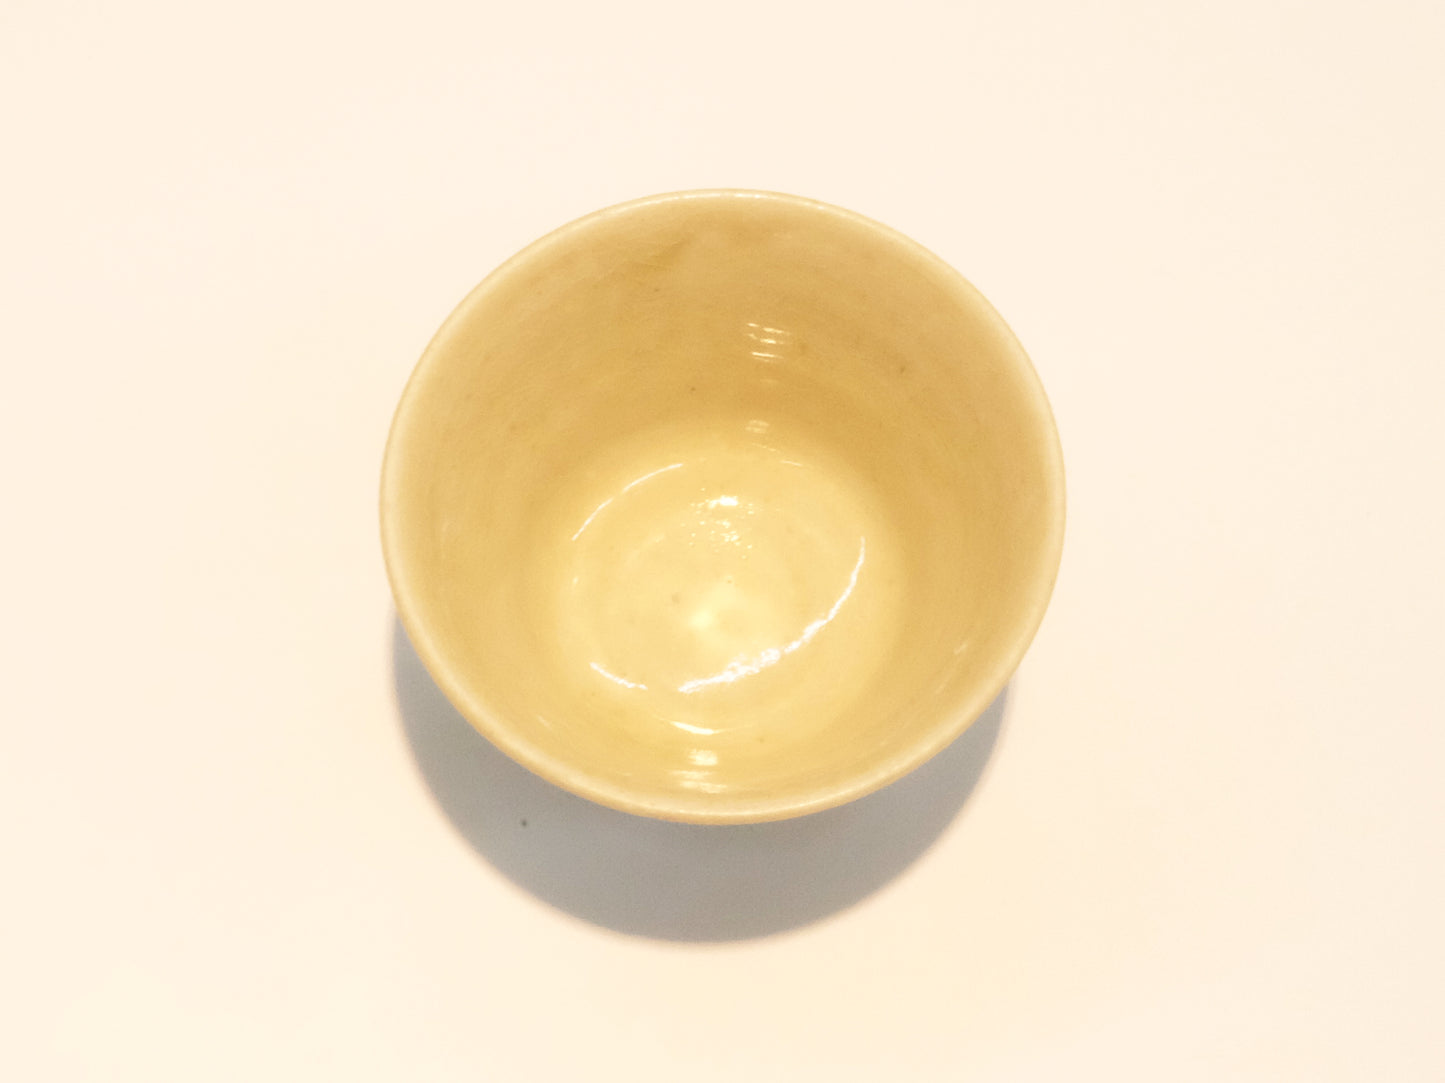 
                  
                    Ash White Tea Cups by Aya Kondo
                  
                